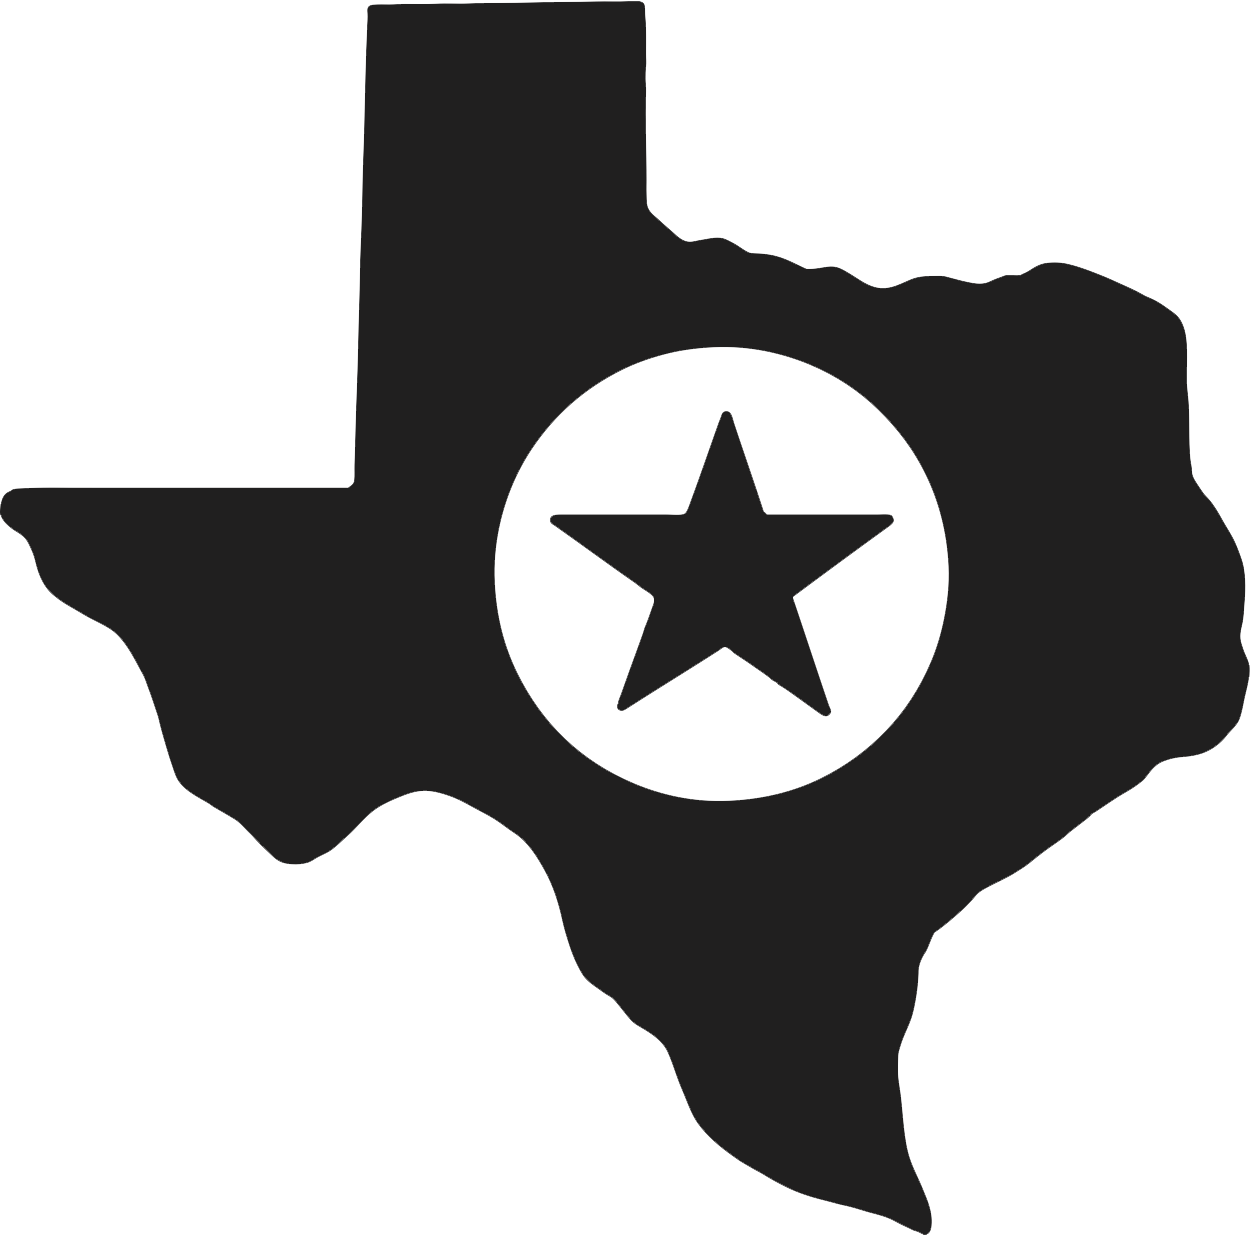 Texas DMV Certificate